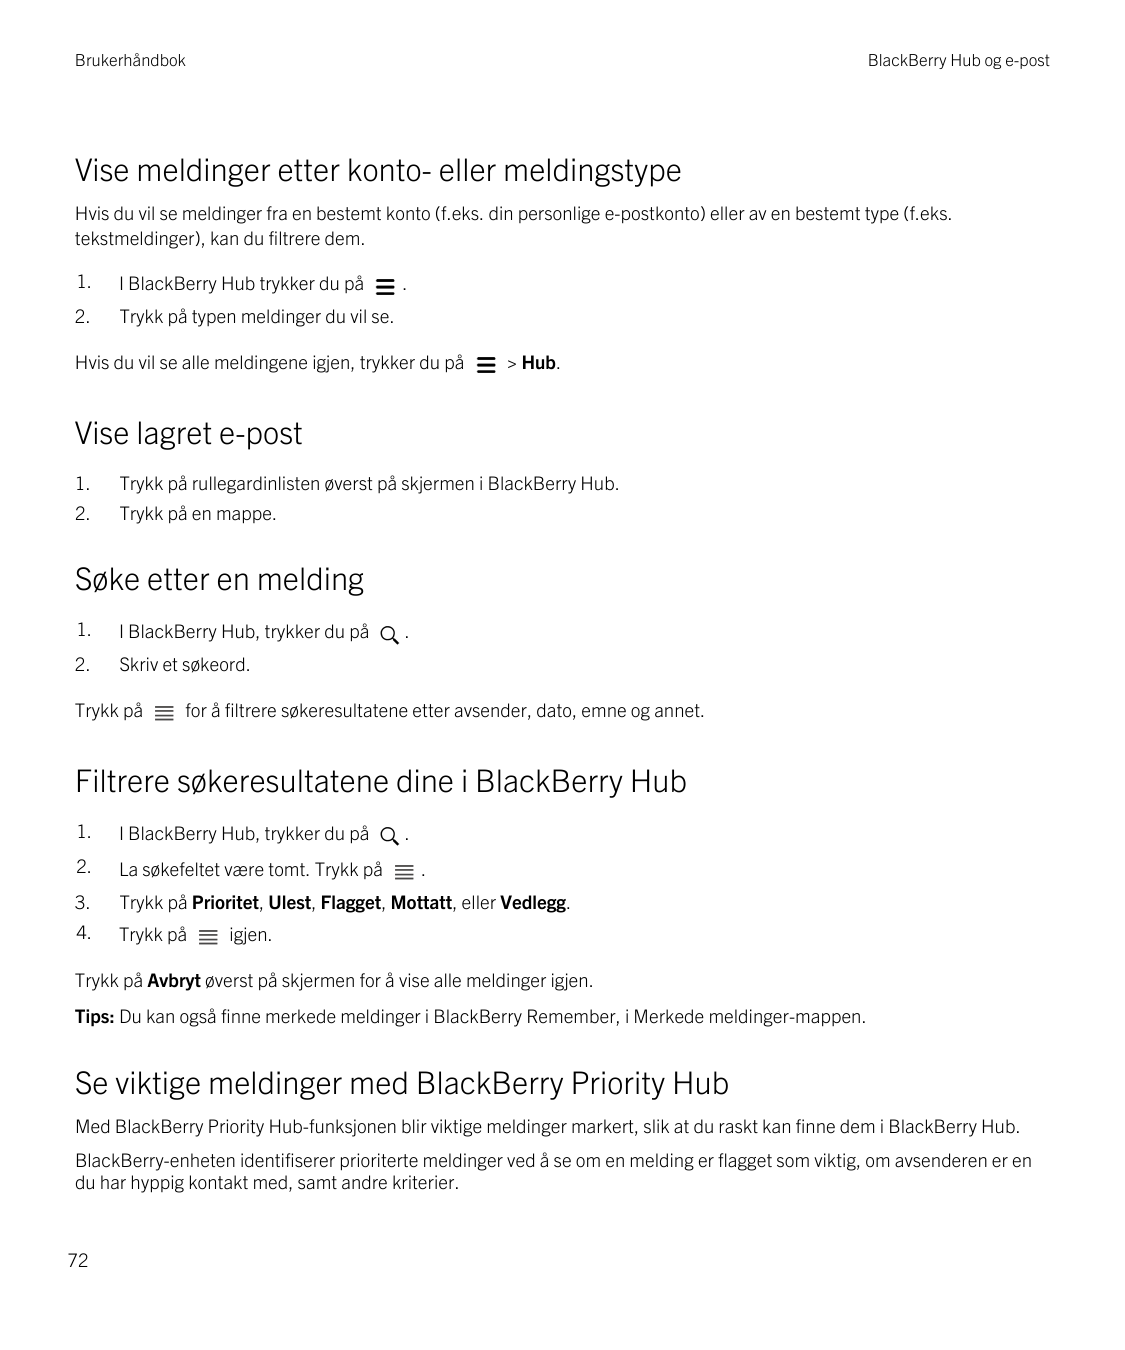 BrukerhåndbokBlackBerry Hub og e-postVise meldinger etter konto- eller meldingstypeHvis du vil se meldinger fra en bestemt konto